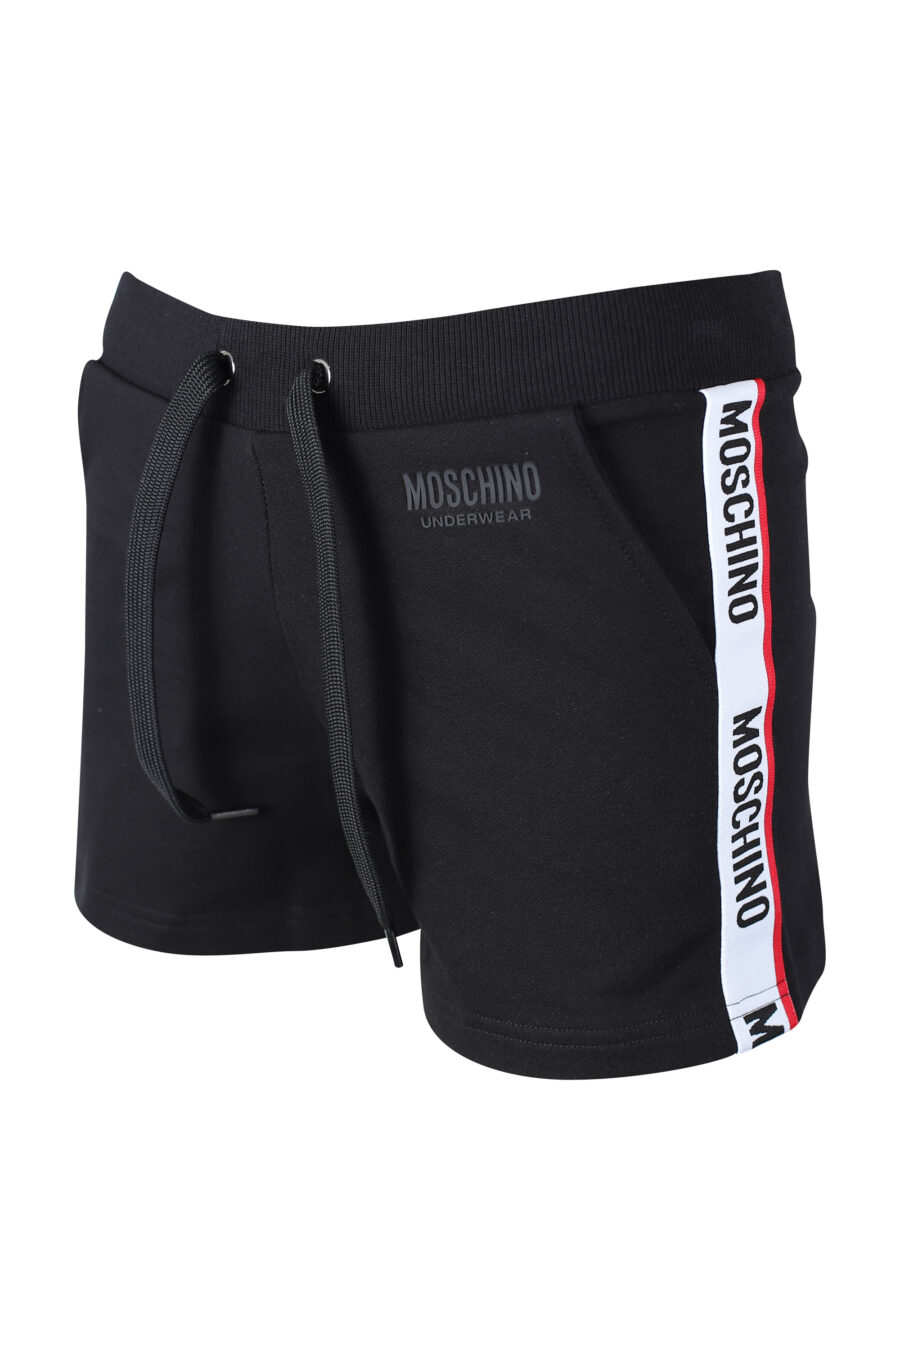 Pantalón de chándal negro corto con logo en cinta lateral - IMG 2293